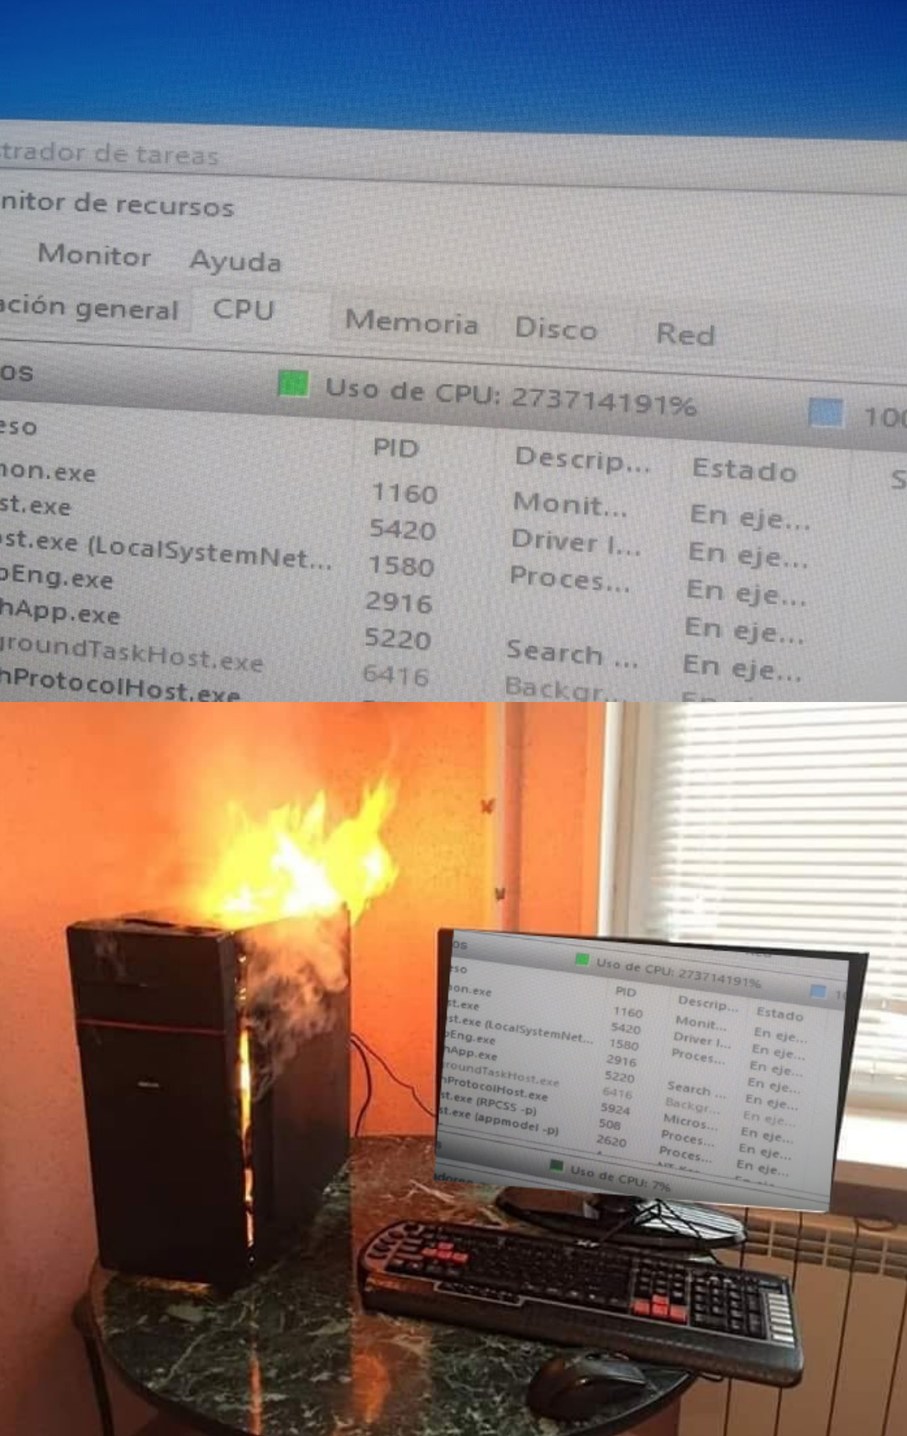 mi PC salio en fuego cuando abri el administrador - meme